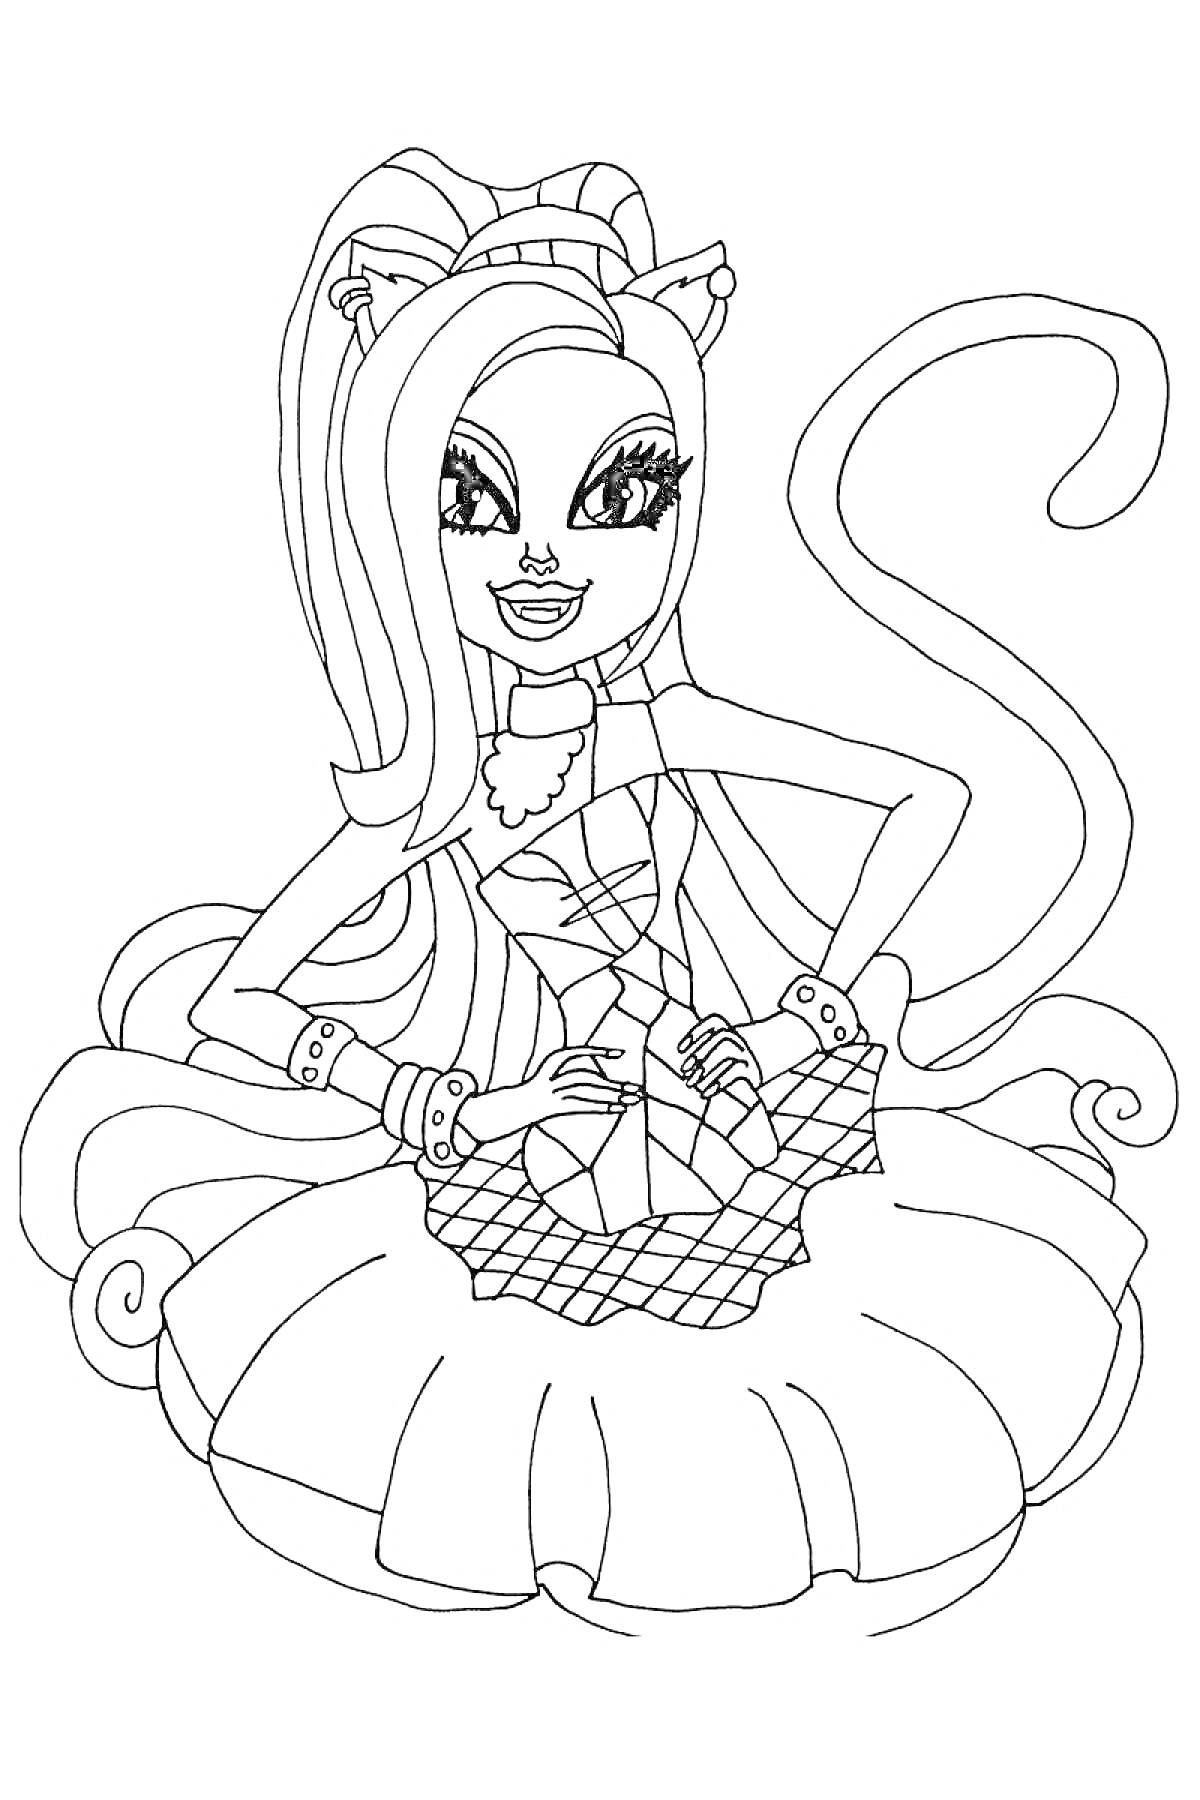 Раскраска Девочка-кошка с длинными волосами, бантом на голове и хвостом, в платье с оборками и корсетной лентой.